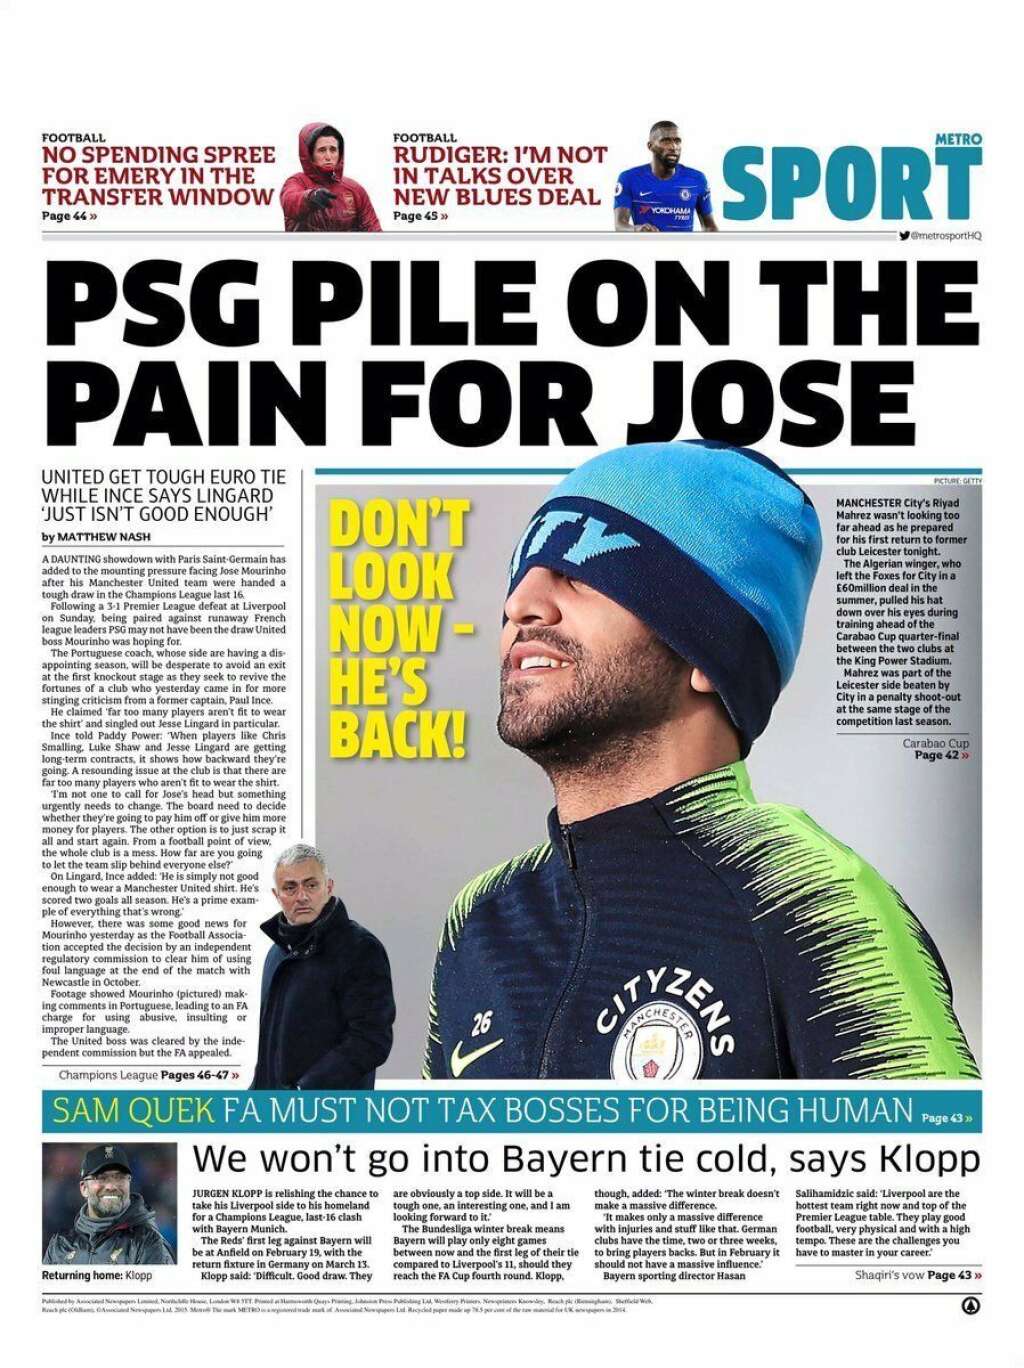 18 décembre - "Metro" - "Le PSG s'ajoute aux problèmes de Mourinho", écrivait la rubrique sport de <em>Metro</em> après le tirage au sort des 8e de finale.